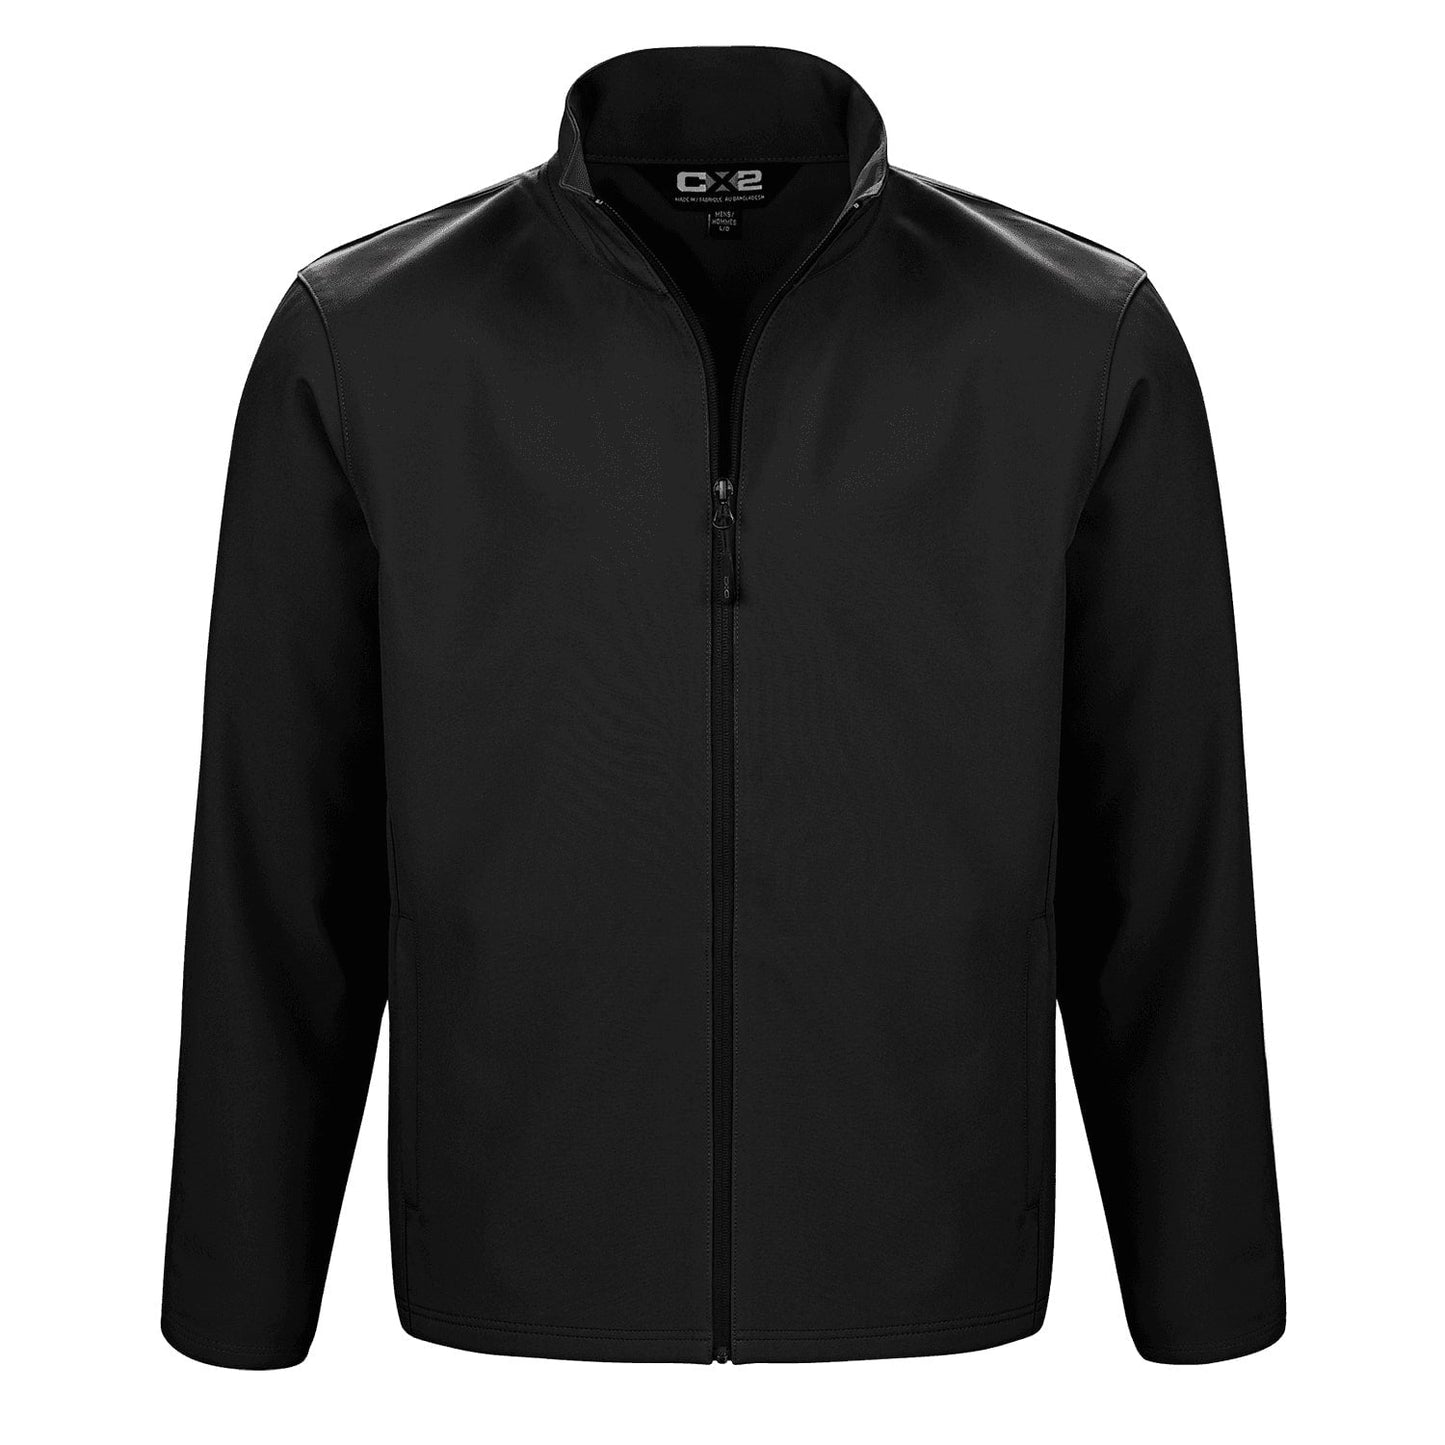 L07240 - Cadet Men’s Lightweight Softshell Jacket Black / S